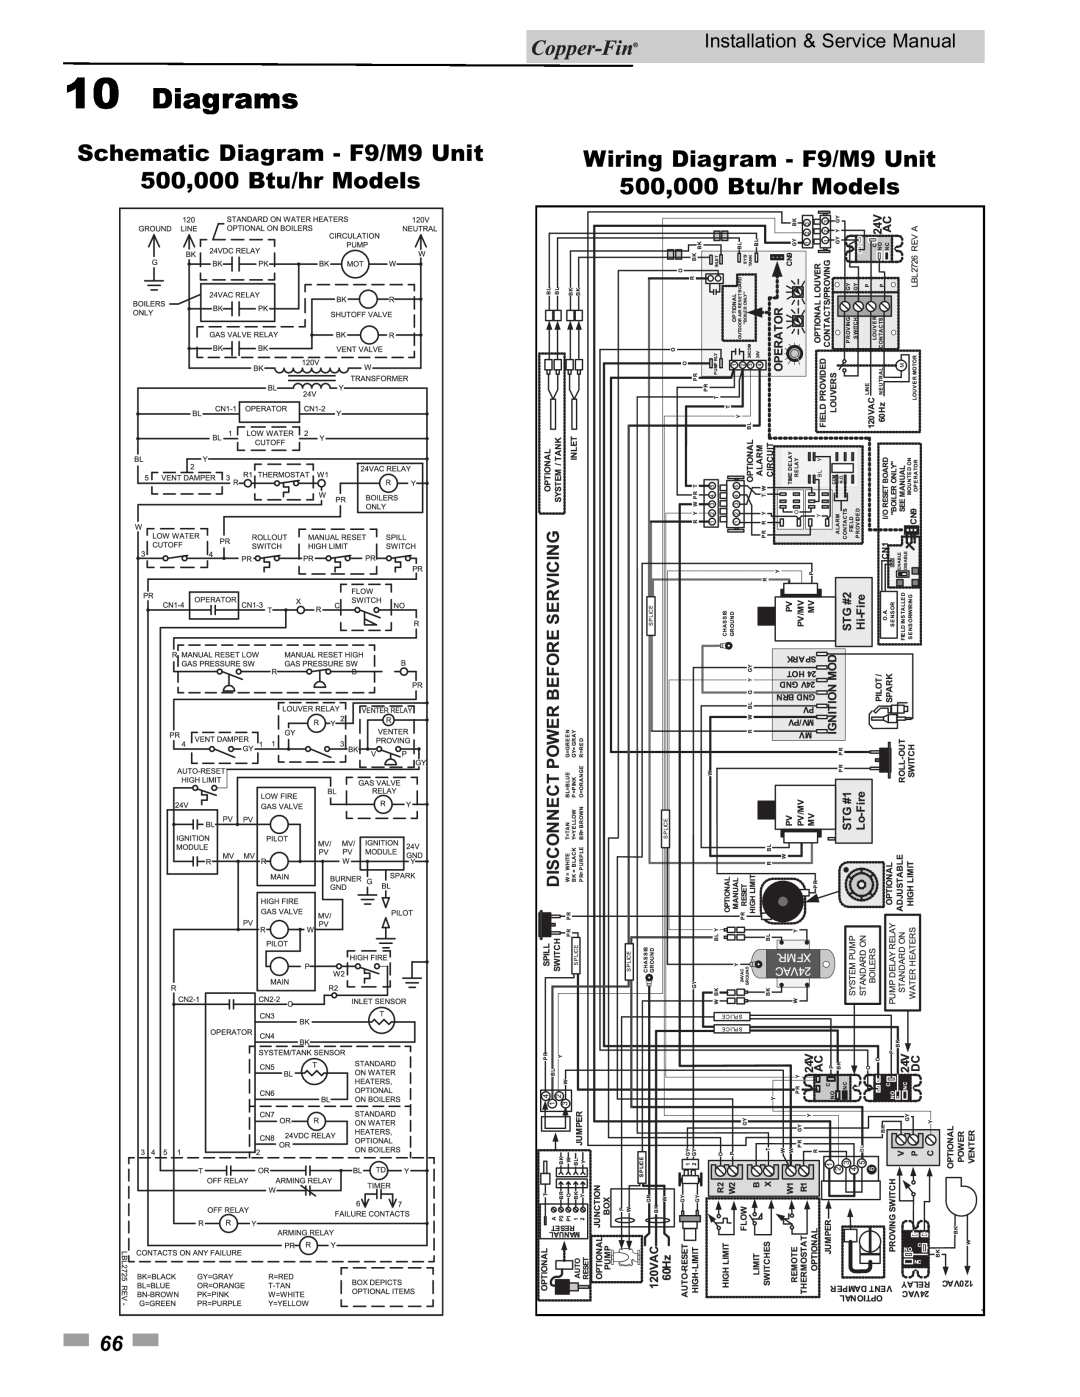 Lochinvar 90 Schematic Diagram - F9/M9 Unit, Wiring Diagram - F9/M9 Unit 500,000 Btu/hr Models, Diagrams 